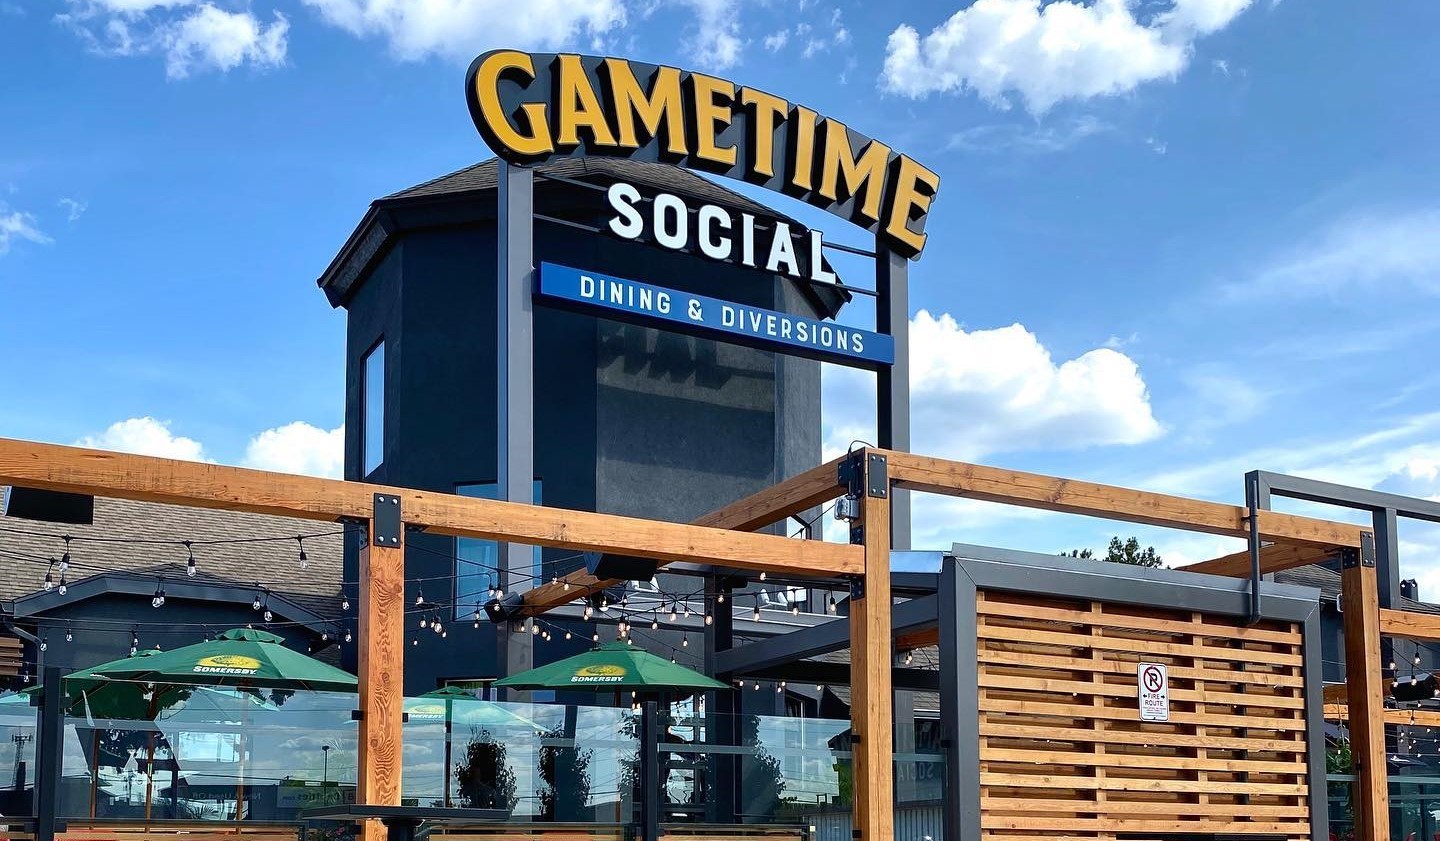 GameTime Social